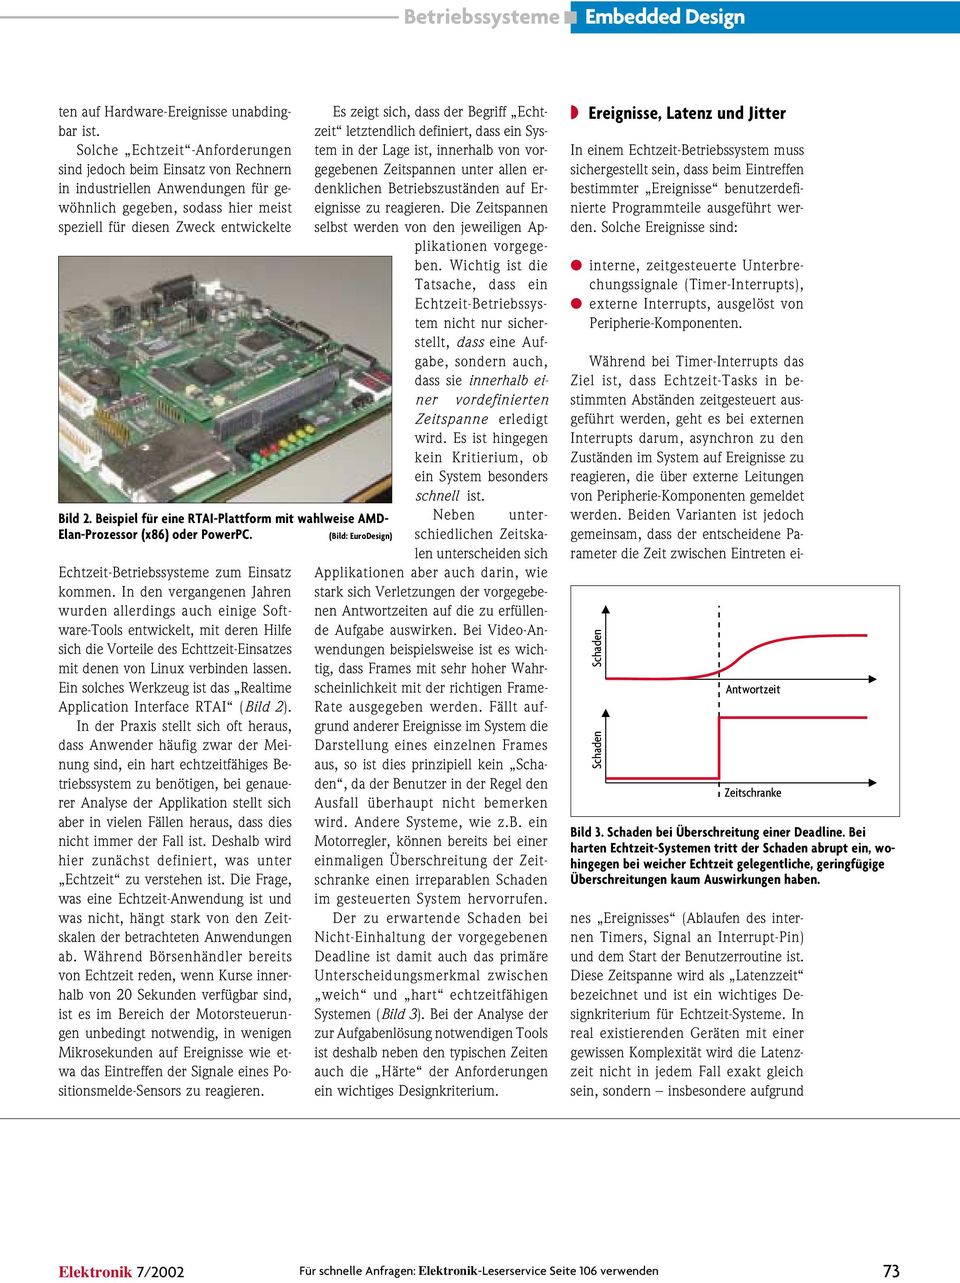 Beispiel für eine RTAI-Plattform mit wahlweise AMD- Elan-Prozessor (x86) oder PowerPC. (Bild: EuroDesign) Echtzeit-Betriebssysteme zum Einsatz kommen.